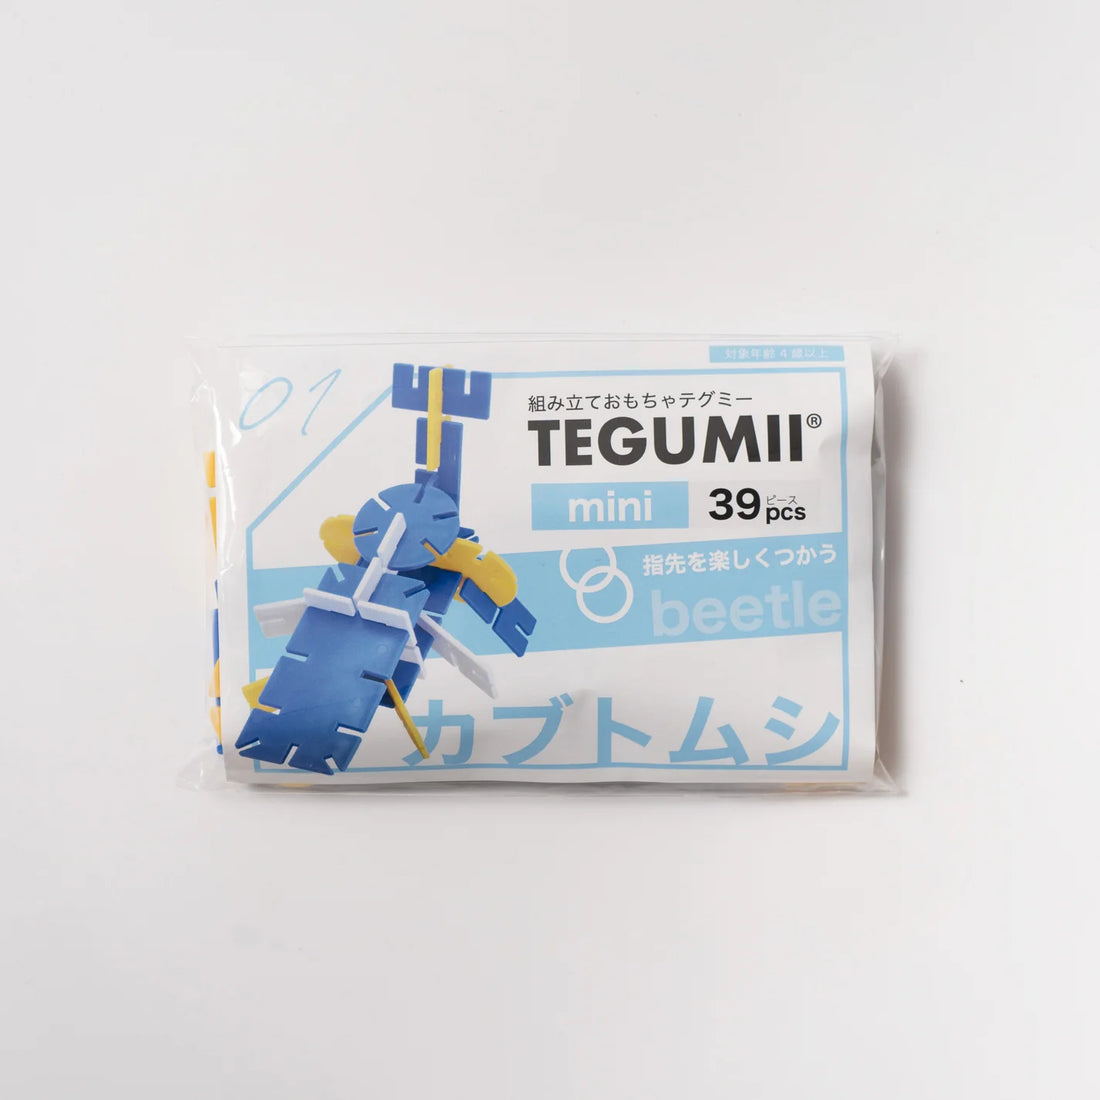 TEGUMII mini set 01｜39pcs